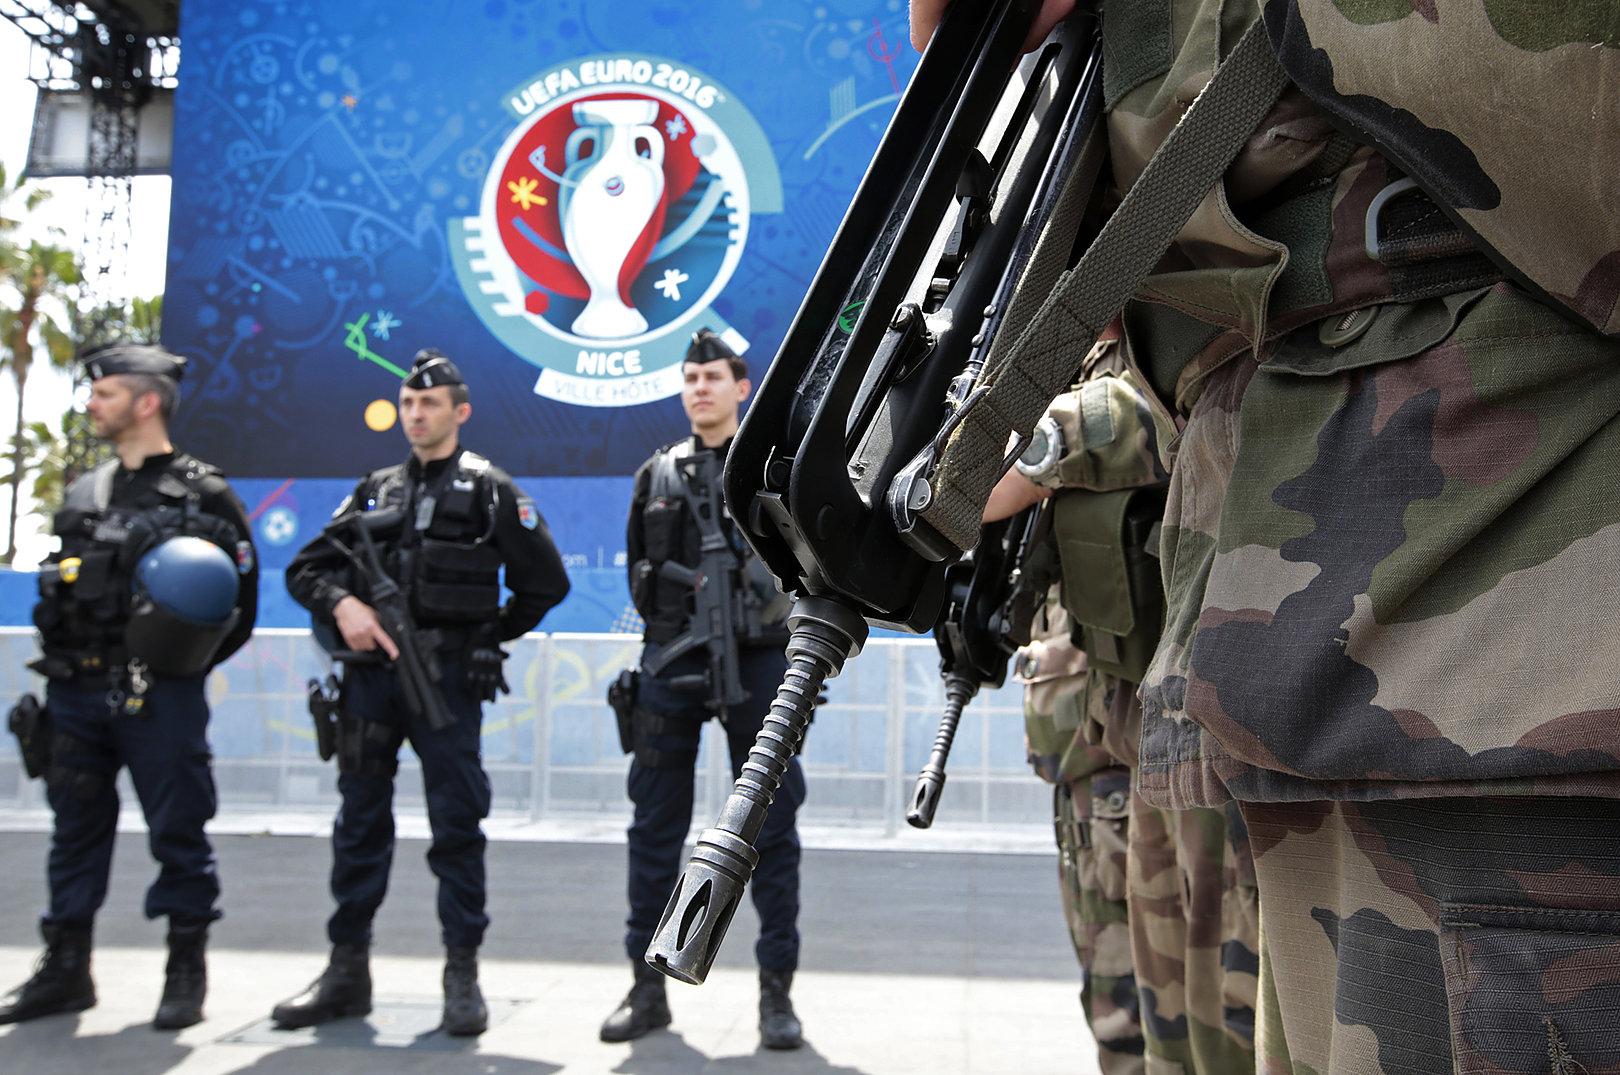 Cảnh sát và binh sĩ Pháp canh gác trước một khu vui chơi dành cho CĐV tại Nice. Ảnh: Internet.